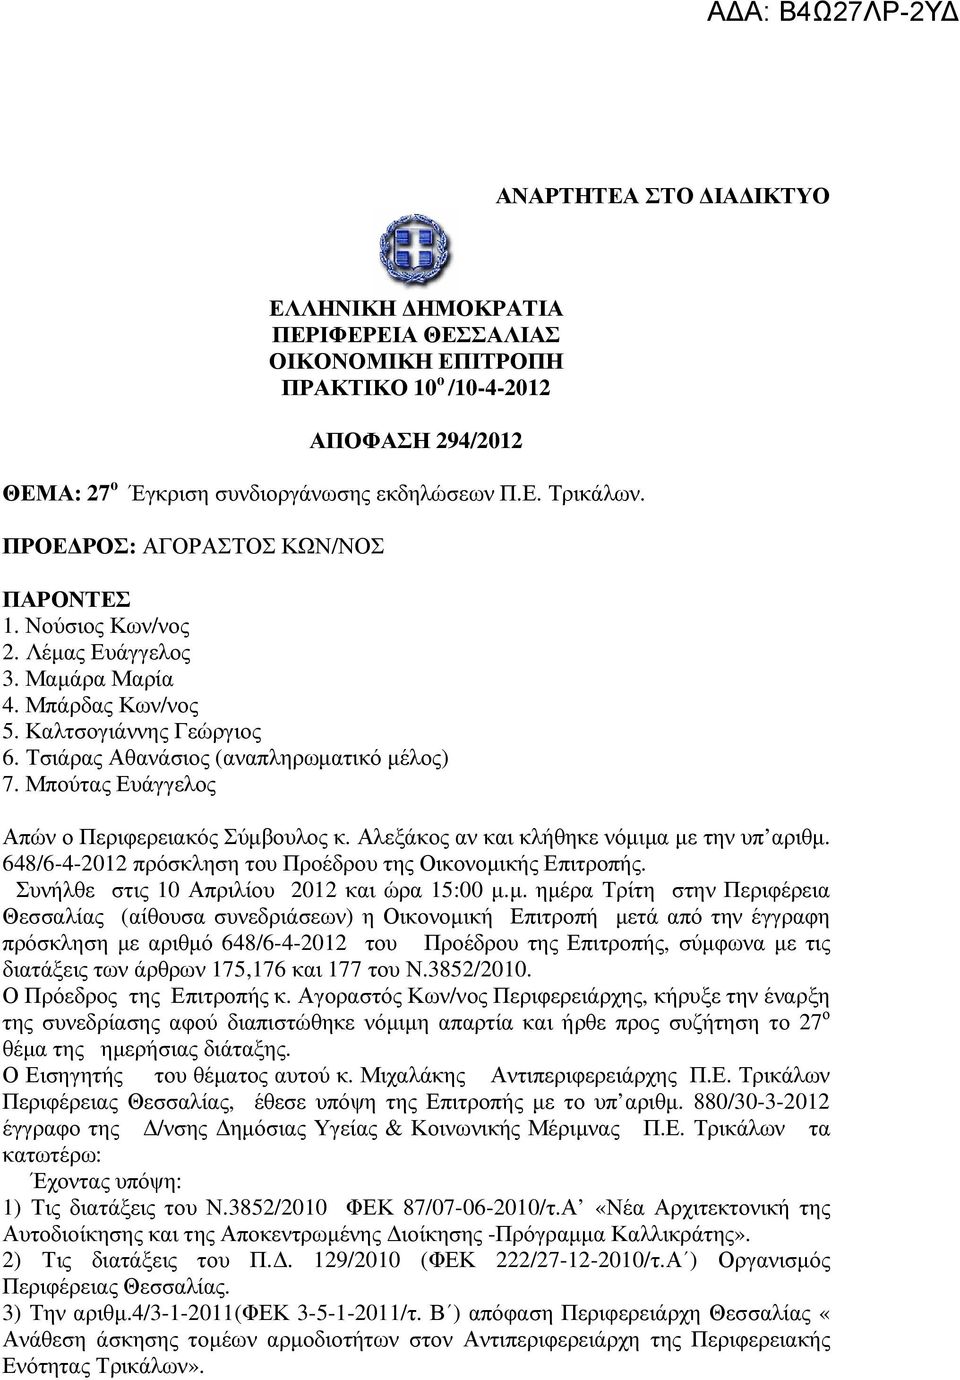 Μπούτας Ευάγγελος Απών ο Περιφερειακός Σύµβουλος κ. Αλεξάκος αν και κλήθηκε νόµιµα µε την υπ αριθµ. 648/6-4-2012 πρόσκληση του Προέδρου της Οικονοµικής Επιτροπής.